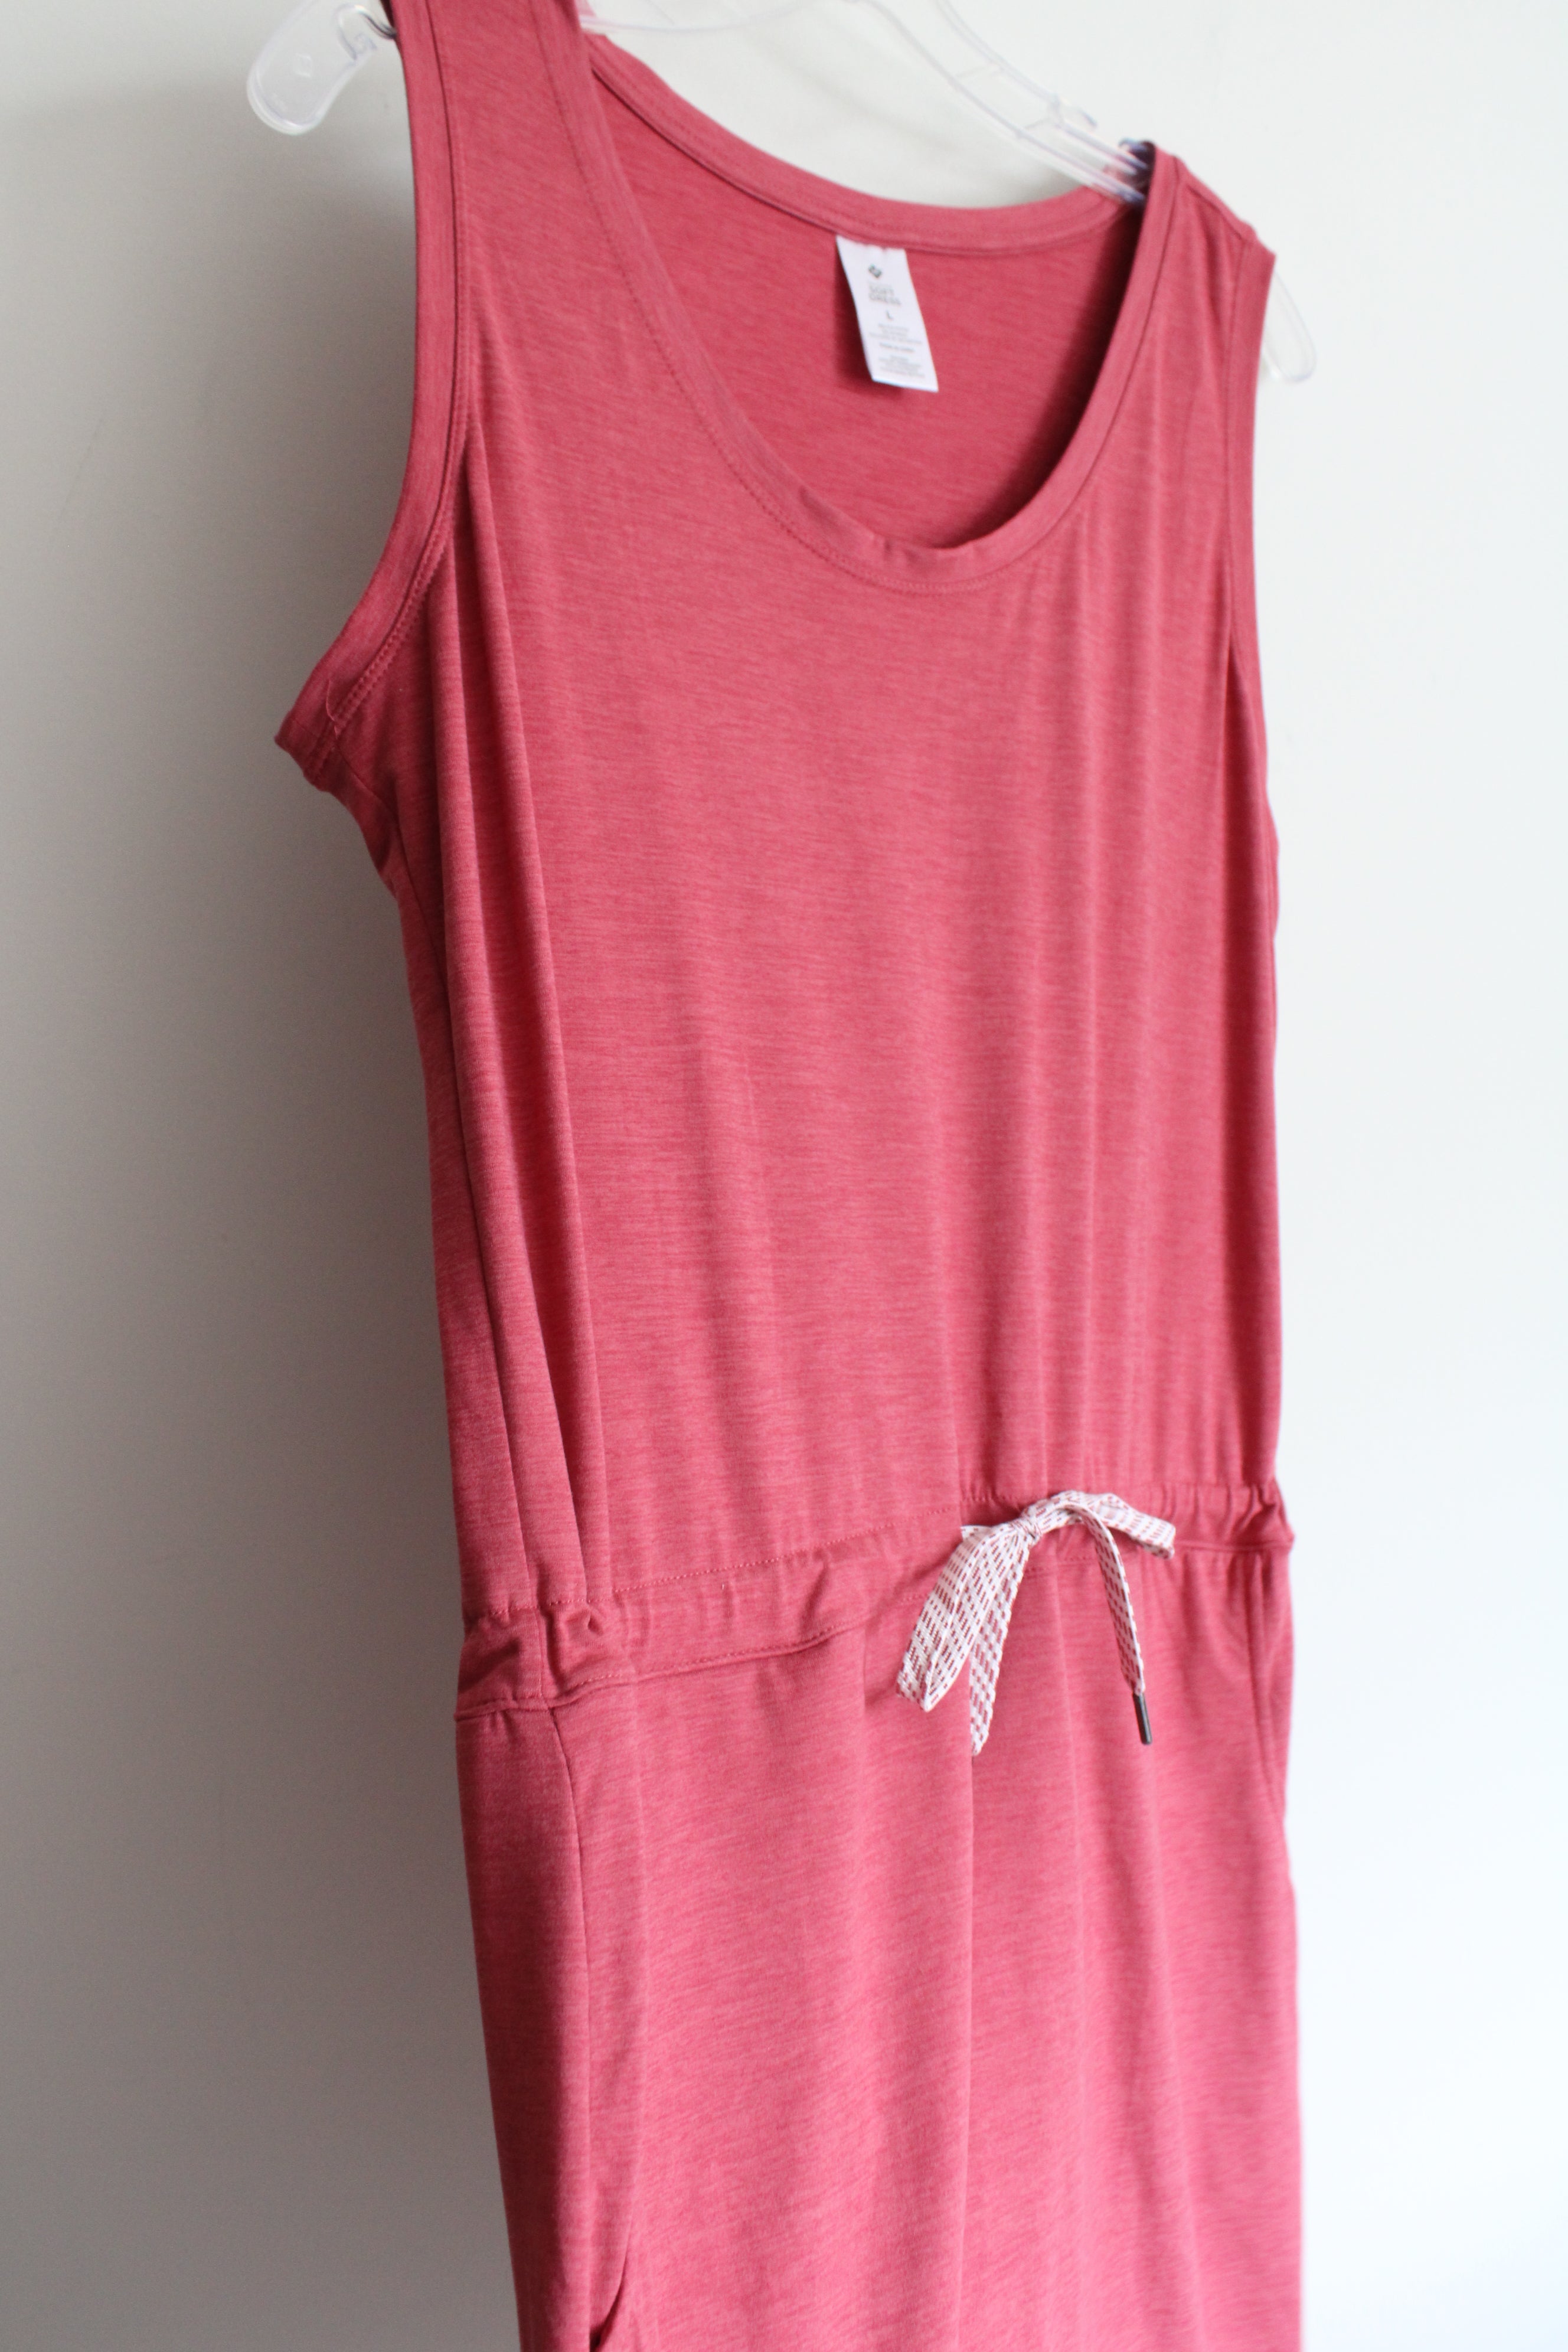 Member's Mark Pink Favorite Soft Dress | L